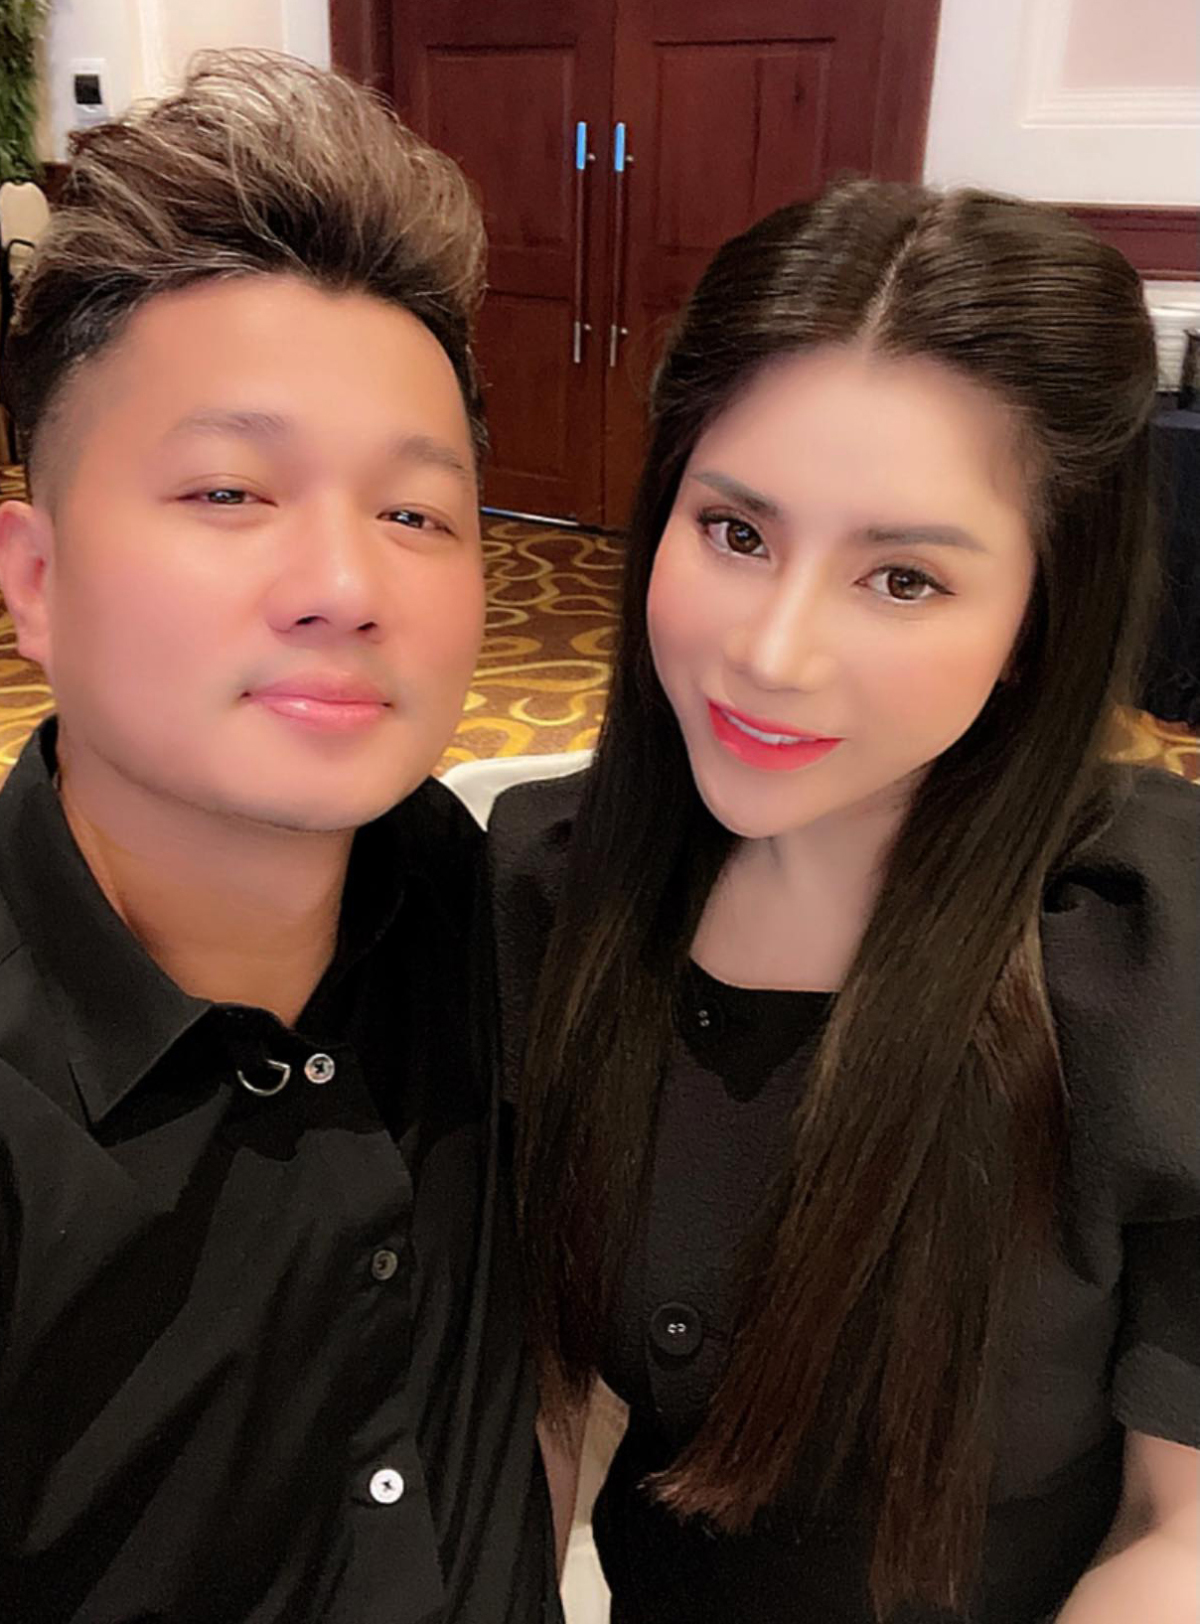 Ca sĩ Lâm Vũ và bạn gái hiện tại - chị Tuyết Trinh